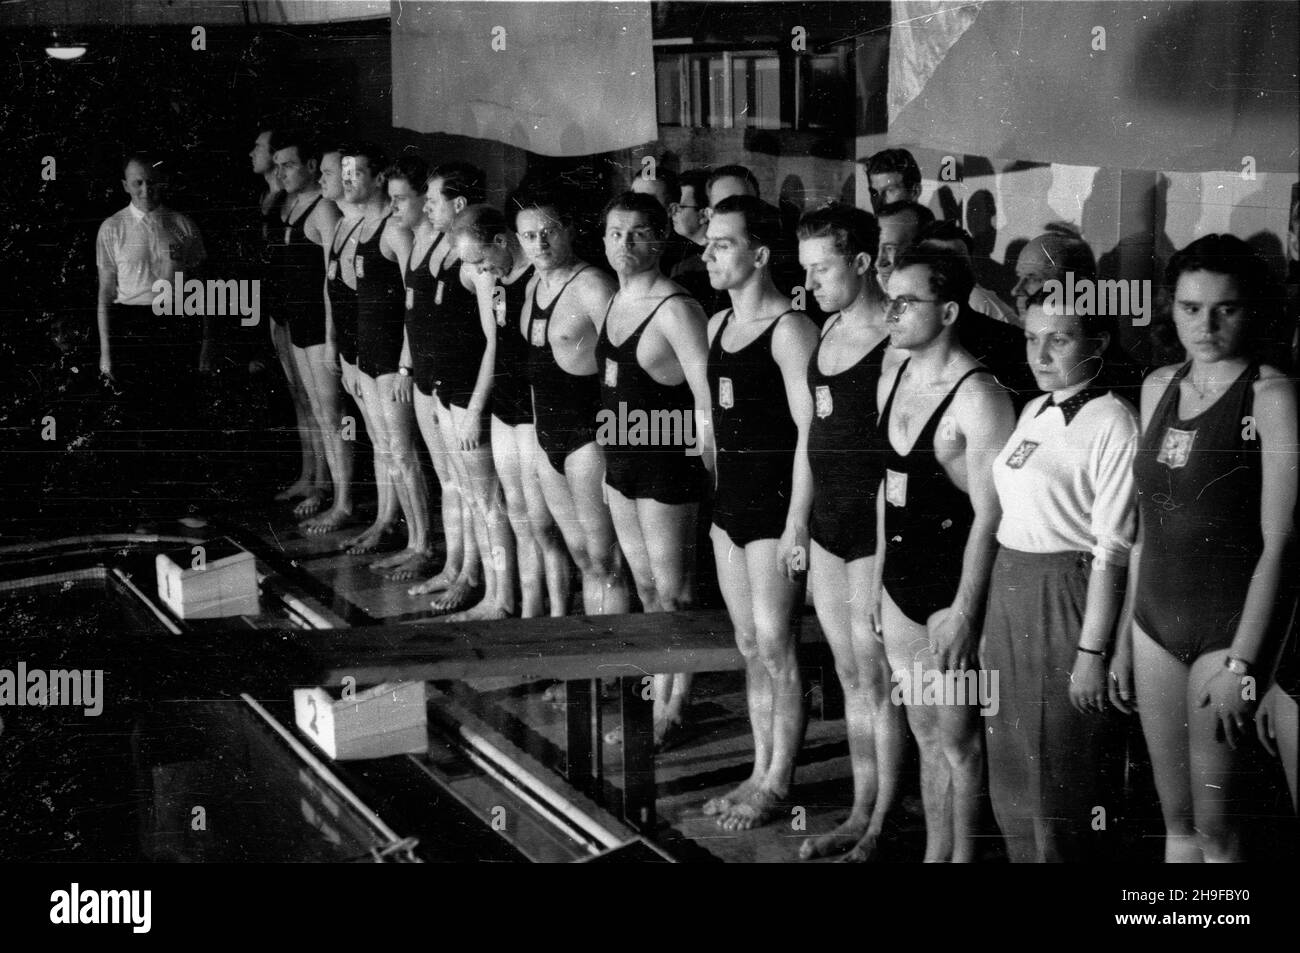 Warszawa, 1948-01-08. Basen YMCA. Pierwsze po wojnie miêdzypañstwowe zawody p³ywackie miêdzy Polsk¹ Œrodkow¹ i Czechos³owacj¹. Nz. p³ywacy czechos³owaccy. Zawody zakoñczy³y siê zwyciêstwem goœci 74,5:33,5. bk  PAP      Warsaw, Jan. 8, 1948. The YMCA swimming pool. The first after the war international swimming championship between Central Poland and Czechoslovakia. Pictured: Czechoslovakia's swimmers. Czechoslovakia won the championship 74.5:33.5.  bk  PAP Stock Photo